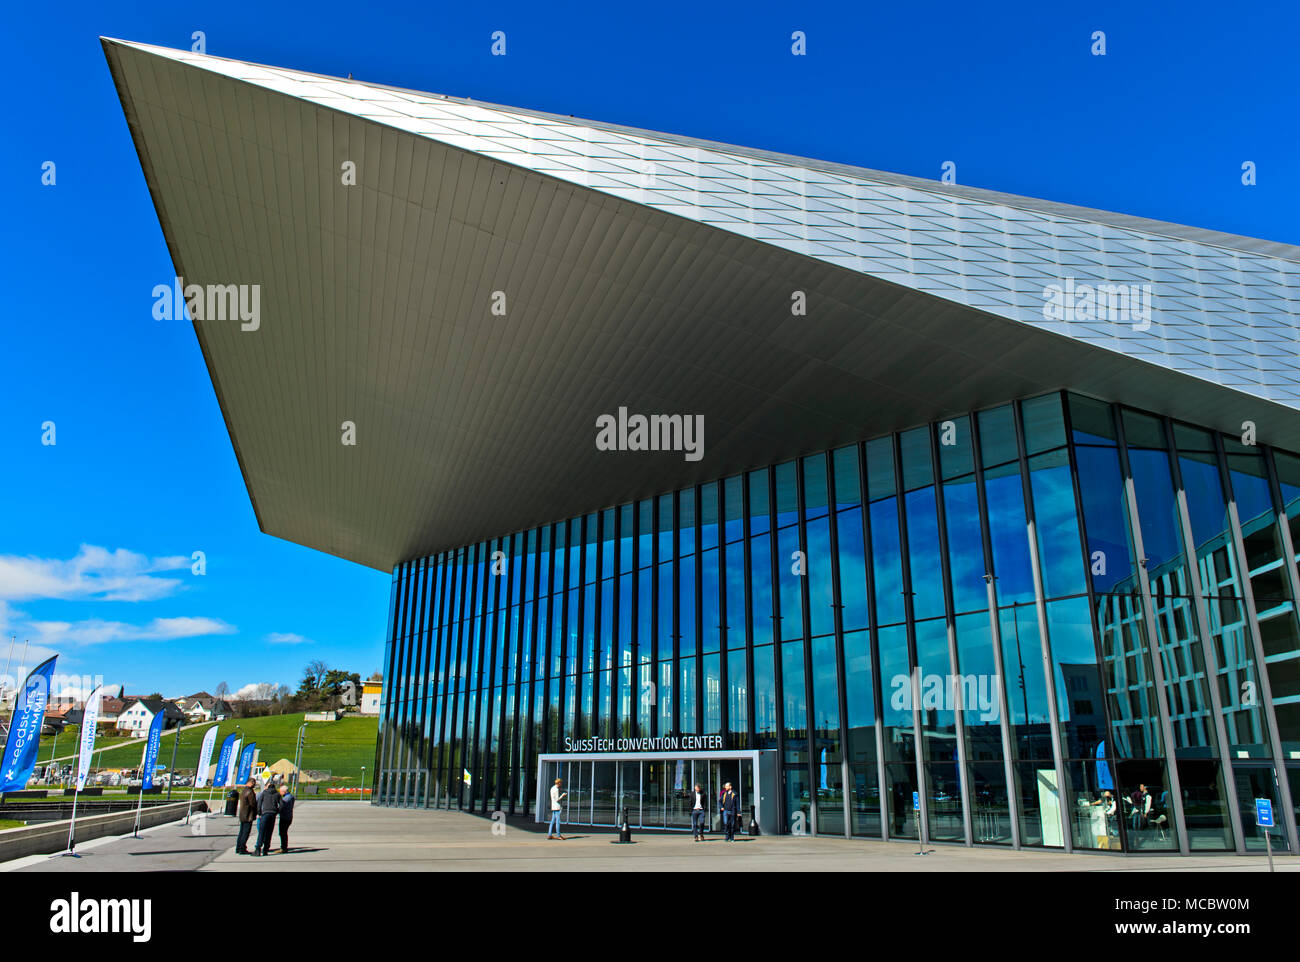 SwissTech Convention Center, École polytechnique fédérale de Lausanne, EPFL, Lausanne, Switzerland Stock Photo